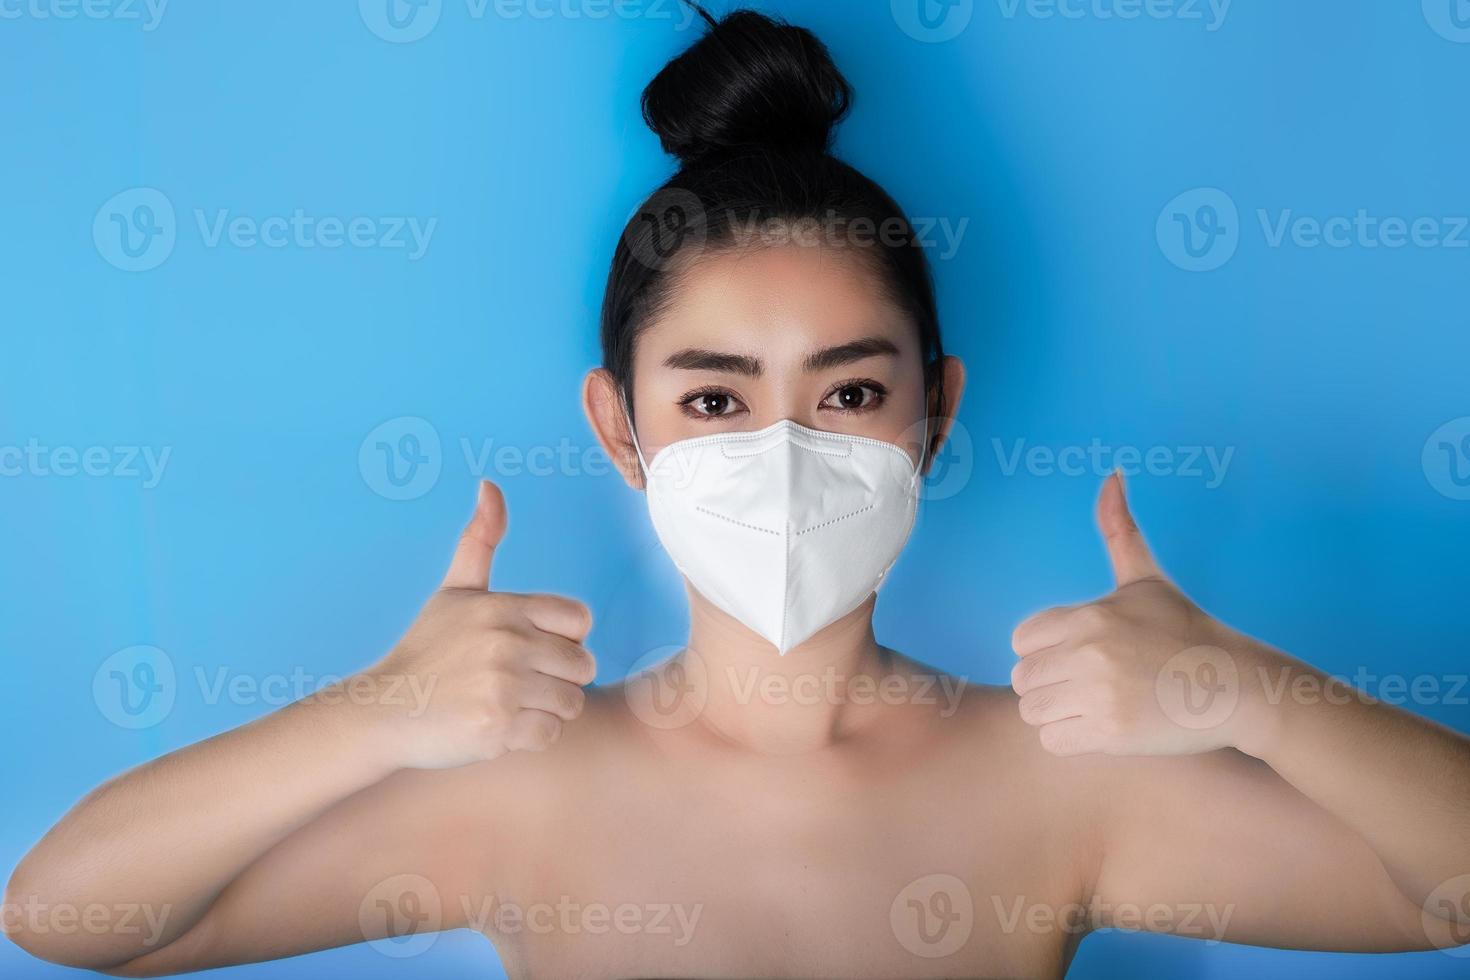 närbild av en kvinna som sätter på sig en respirator n95-mask för att skydda mot luftburna luftvägssjukdomar som influensa covid-19 corona pm2.5 damm och smog, kvinnlig tummen upp gest med handen foto